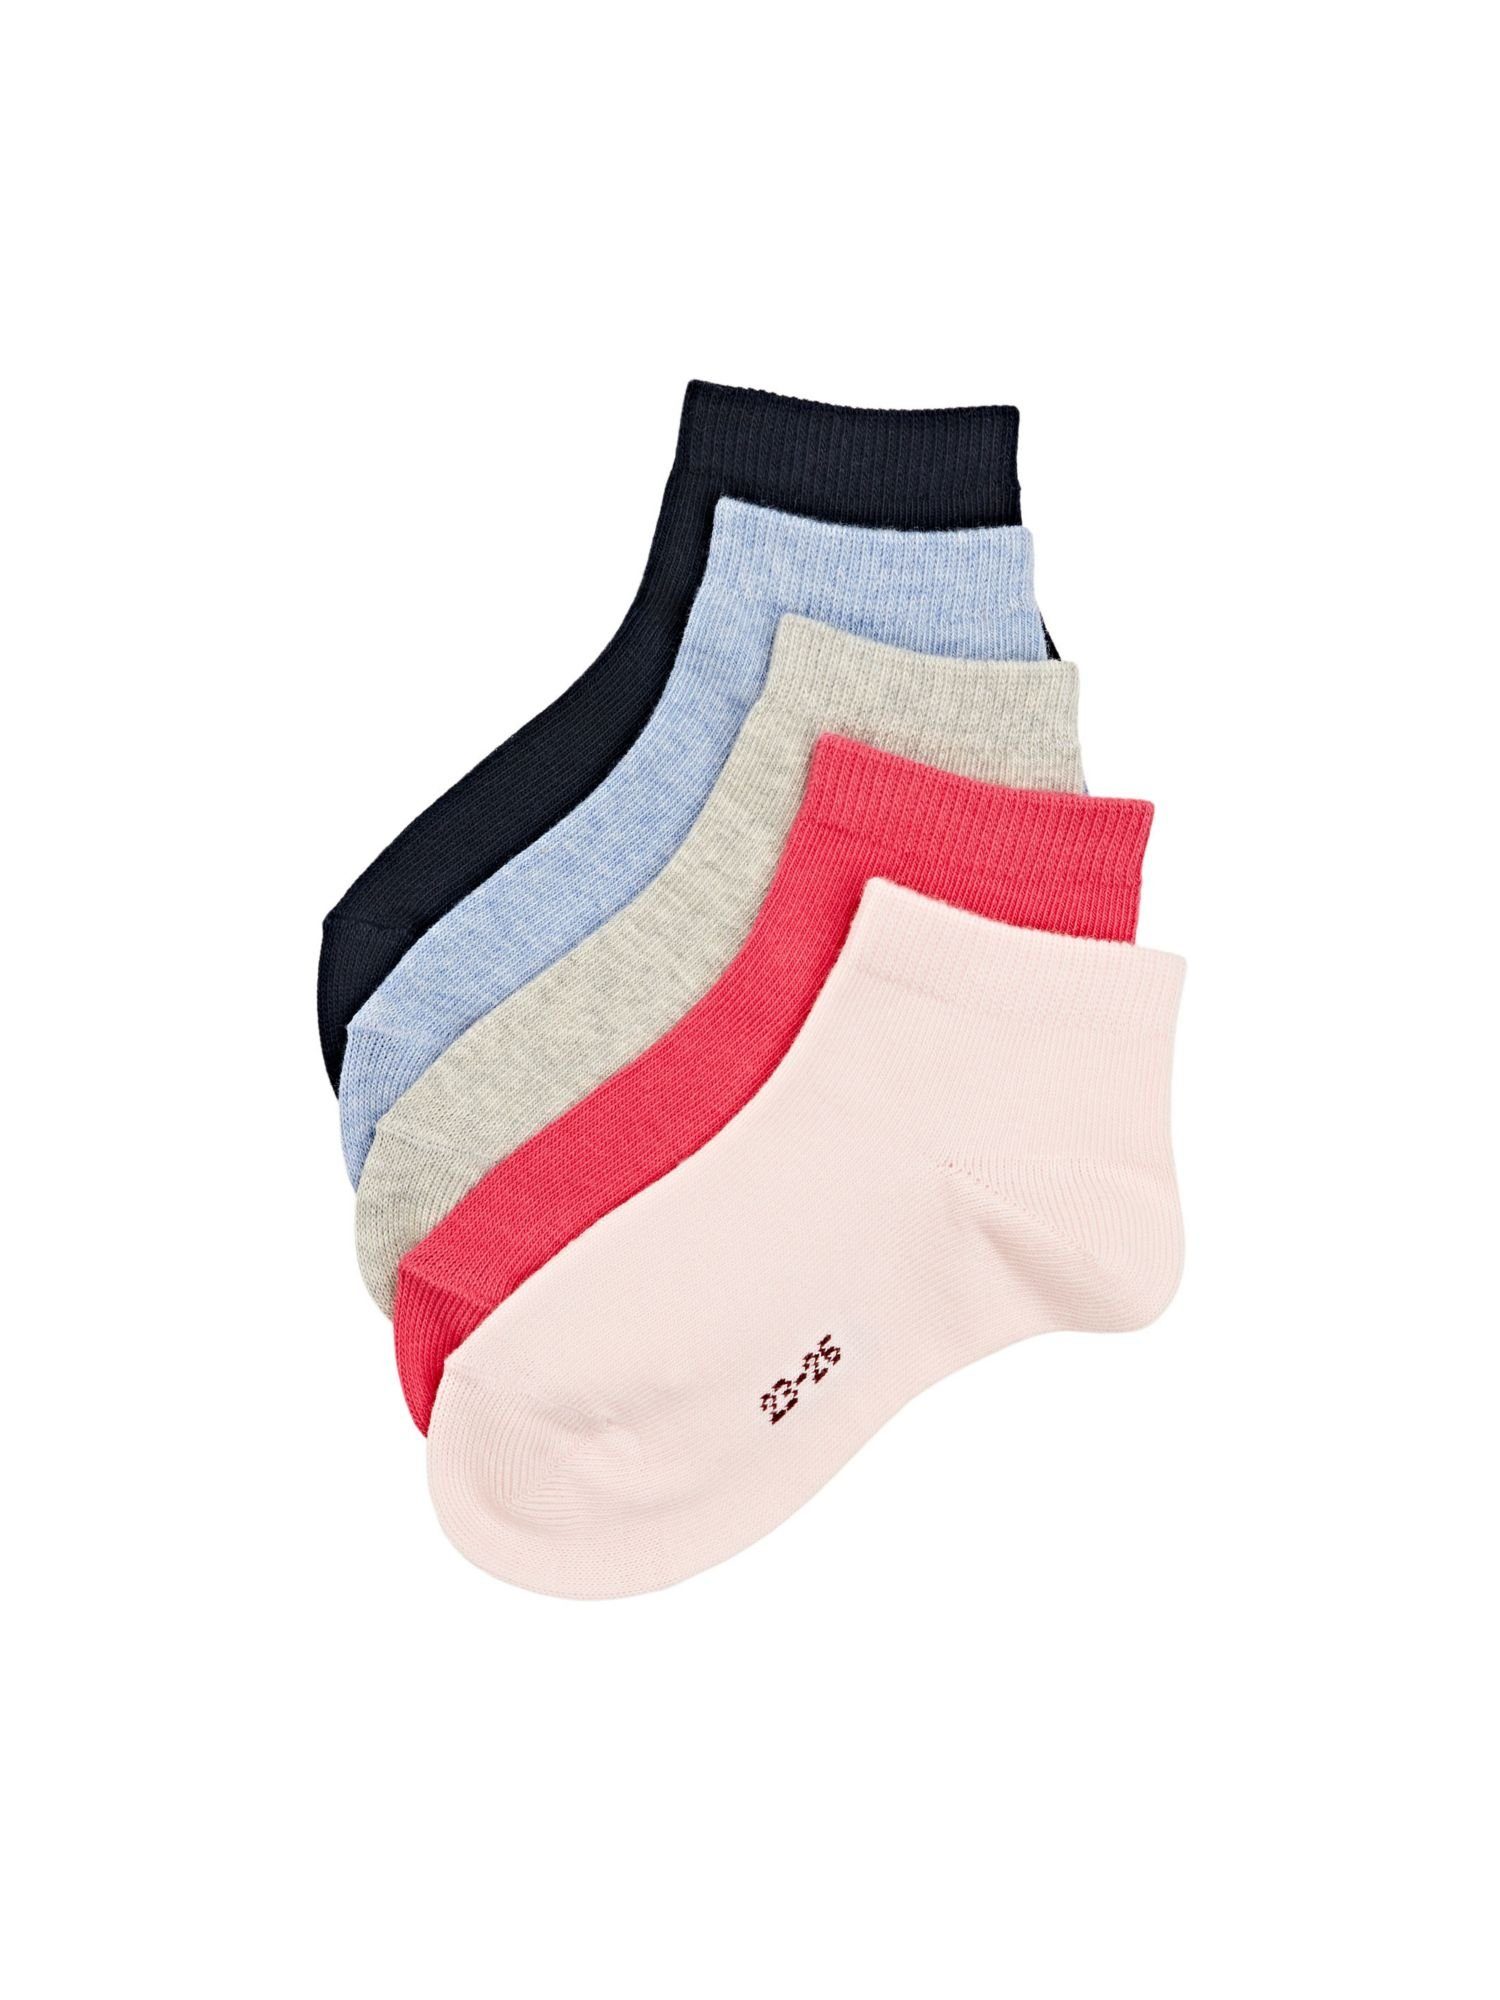 Esprit Sneakersocken 5er-Pack unifarbene Socken, Bio-Baumwoll-Mix ROSE COLORWAY